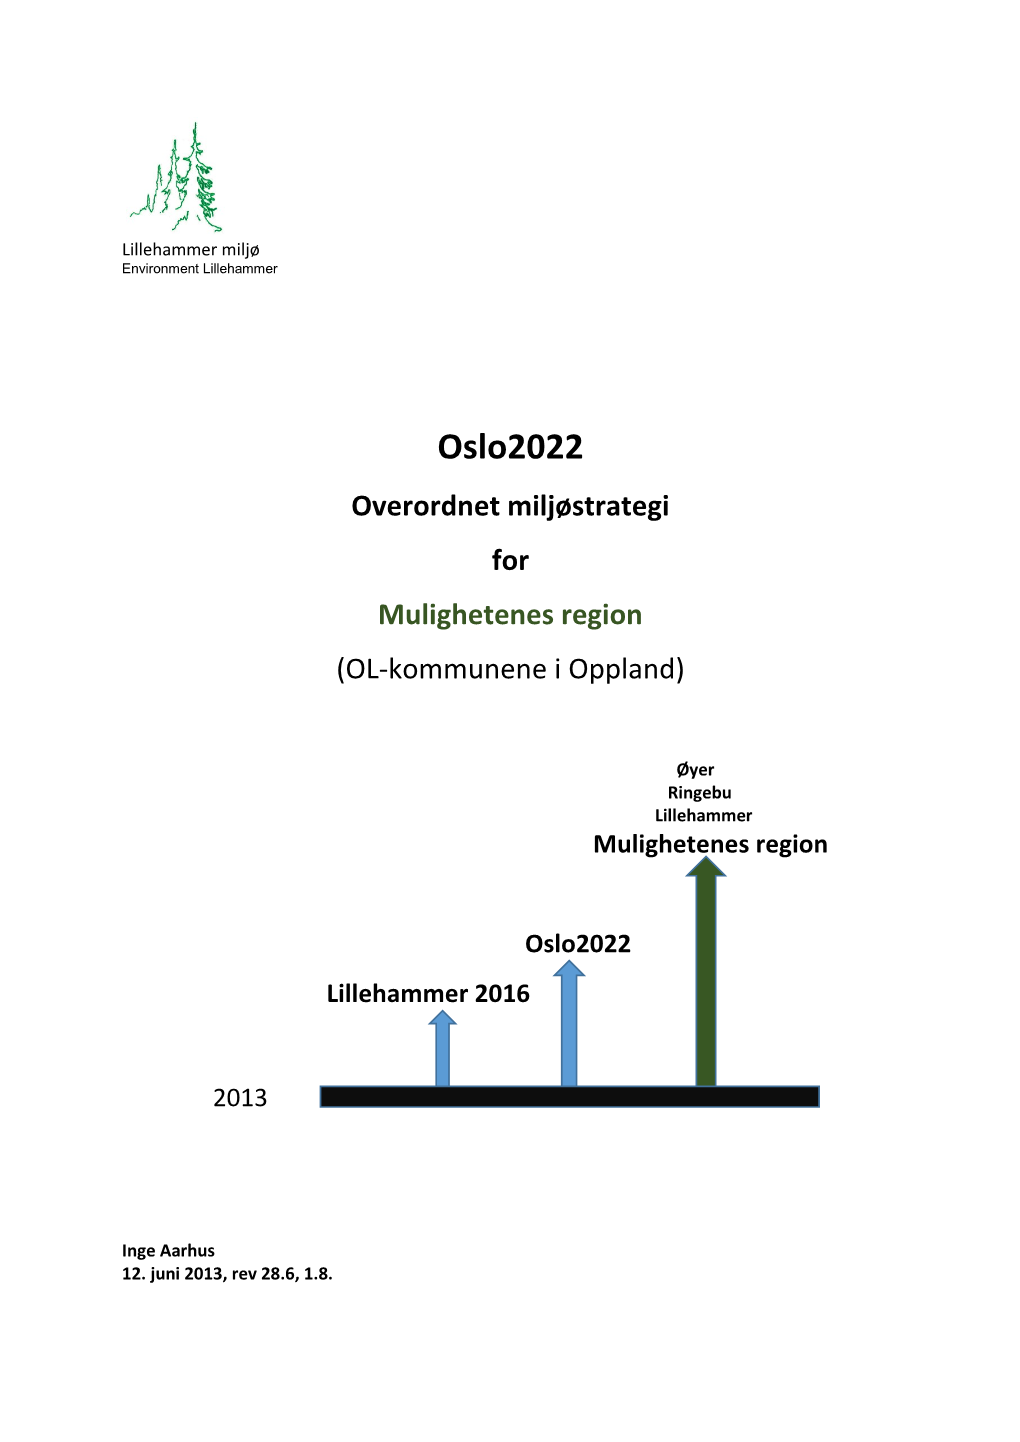 Oslo2022 Overordnet Miljøstrategi for Mulighetenes Region (OL-Kommunene I Oppland)